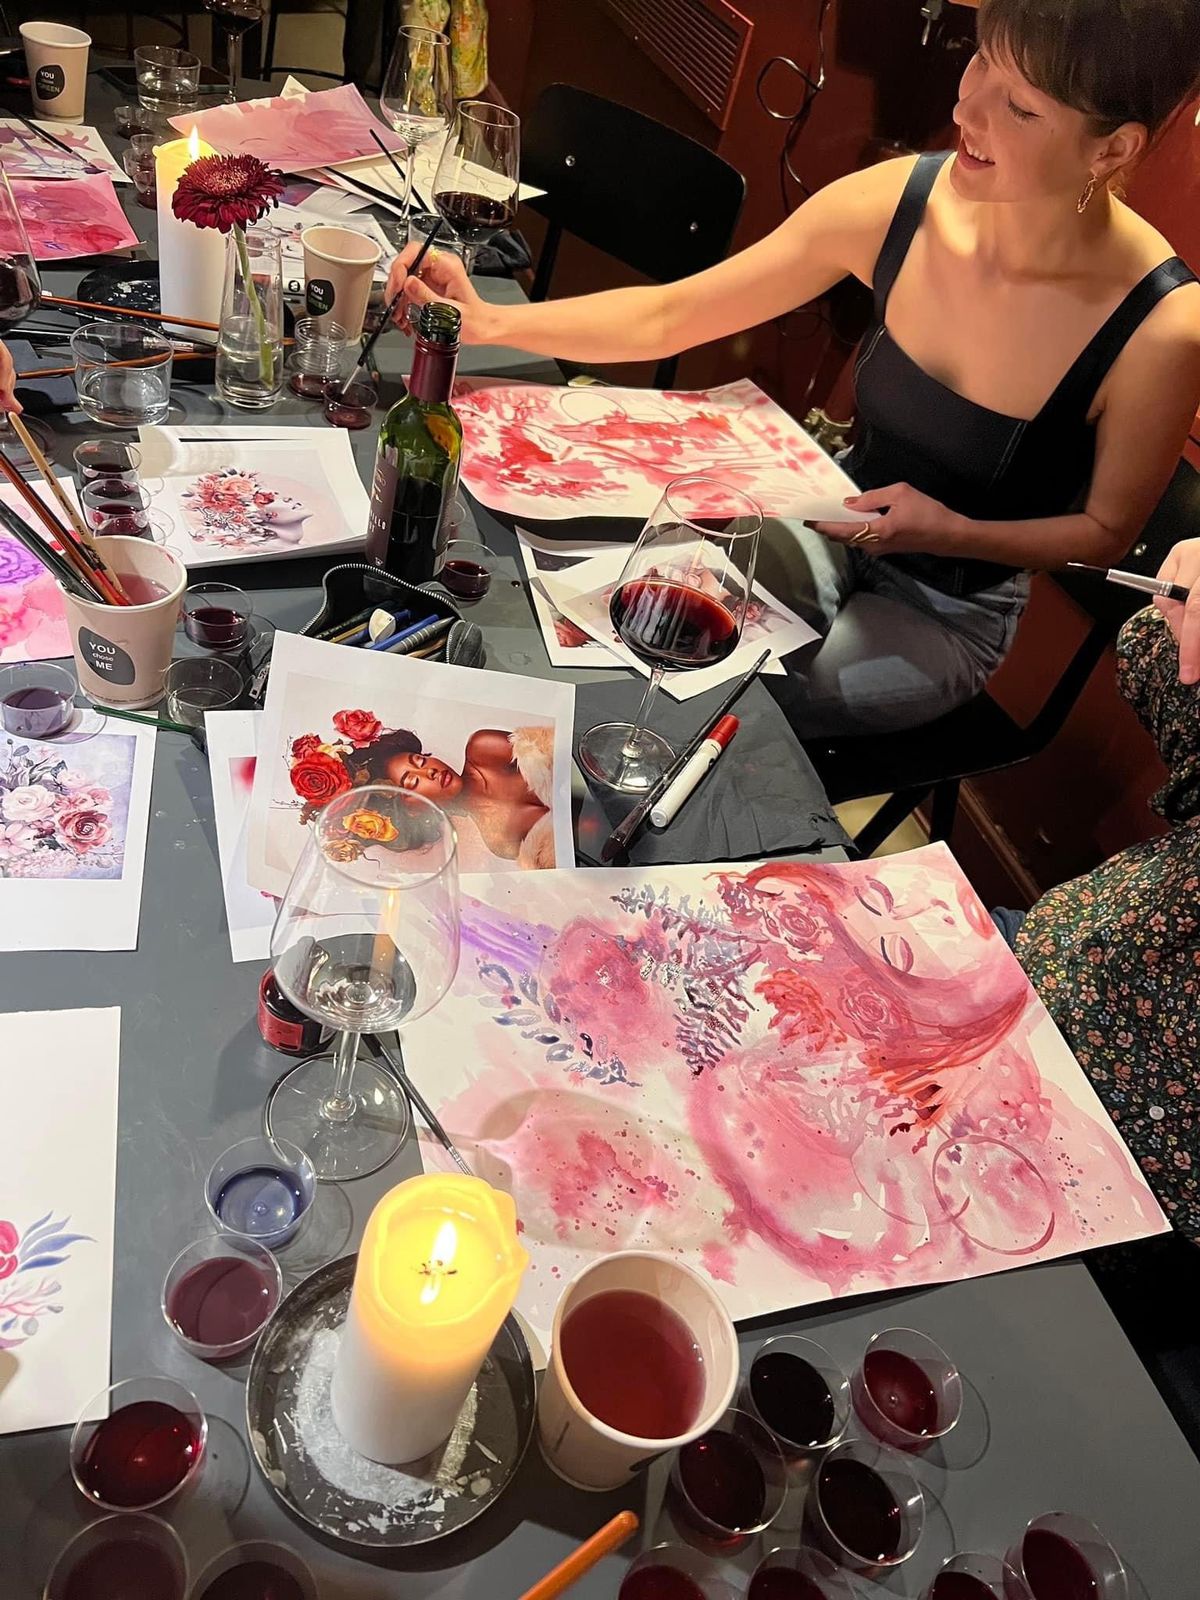 Art Wine workshop\ud83c\udf77\ud83c\udfa8 drink and paint with wine + wine tasting!